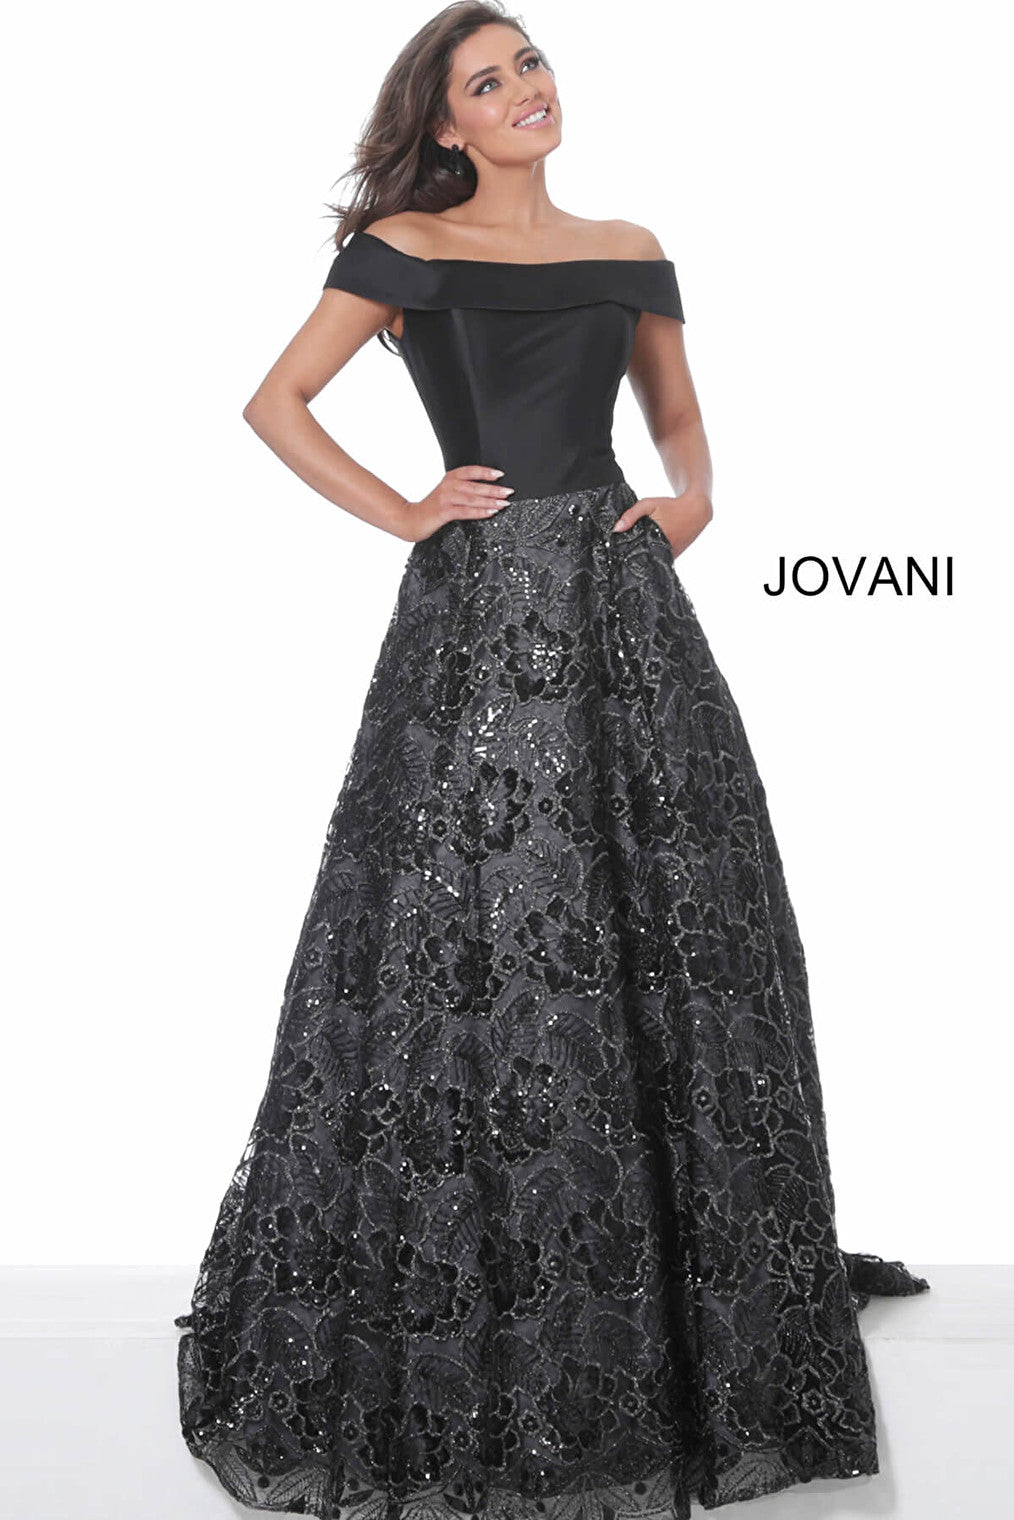 Black off the shpoulder evening gown Jovani 03331